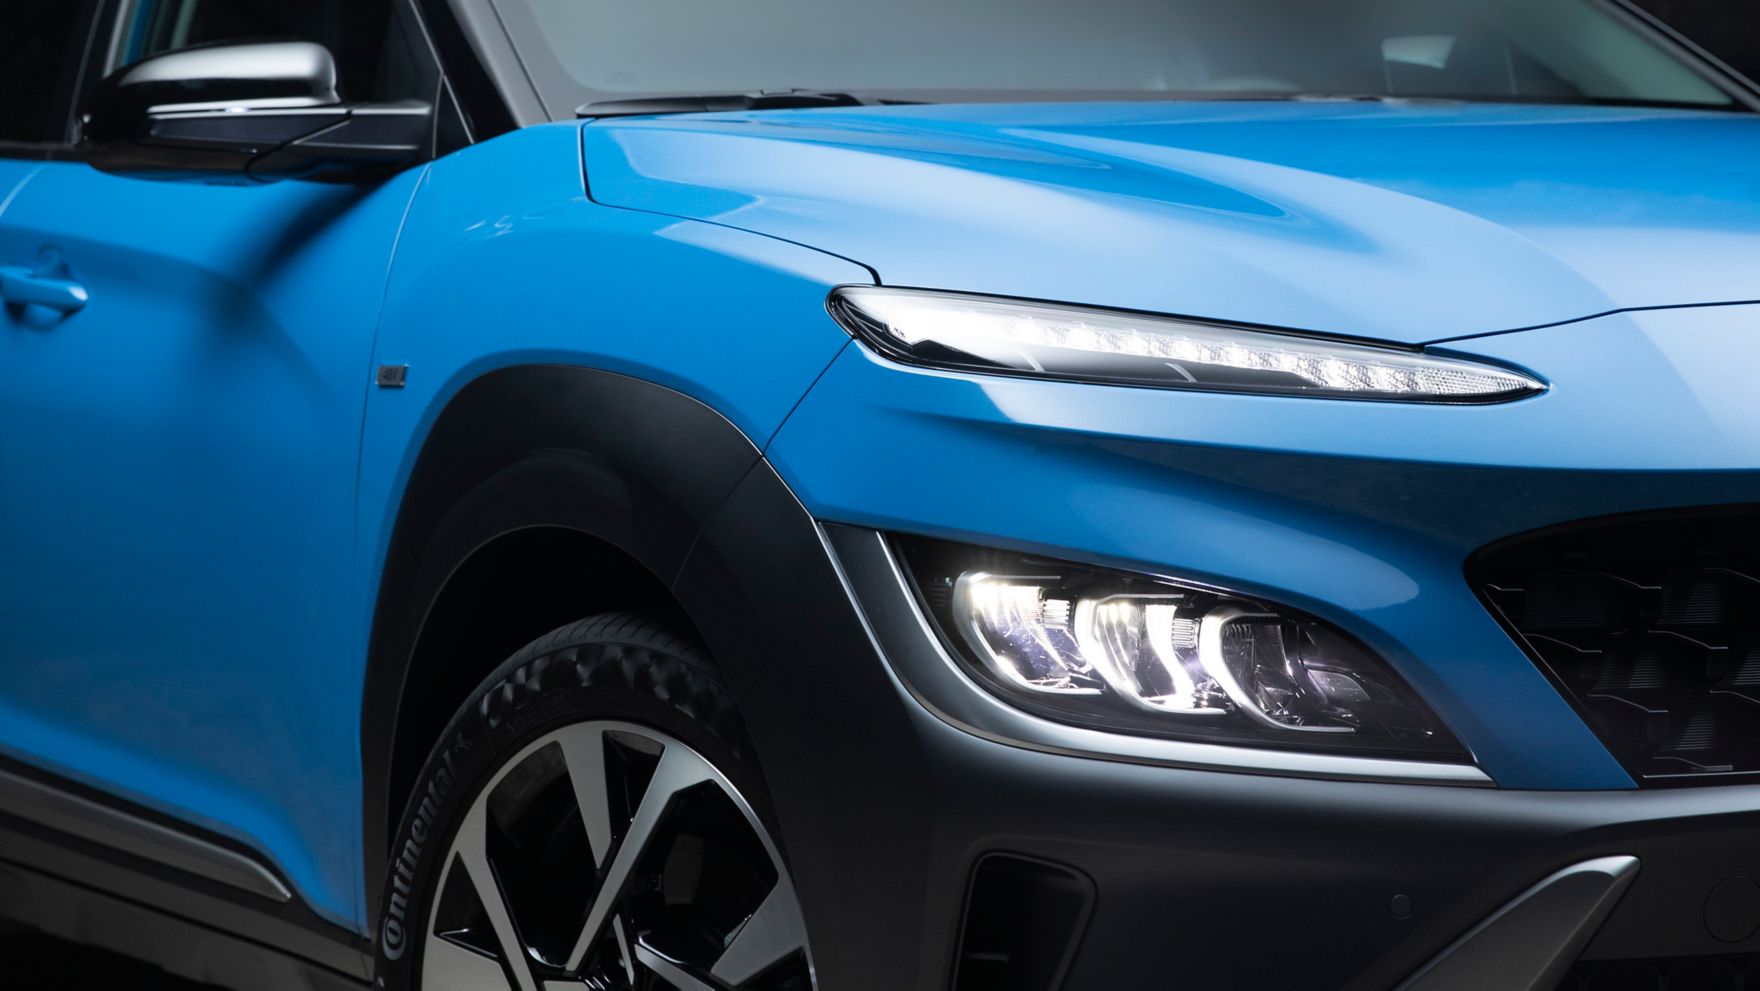 Čelní pohled na nové SUV Hyundai Kona v barvě Surfy Blue.